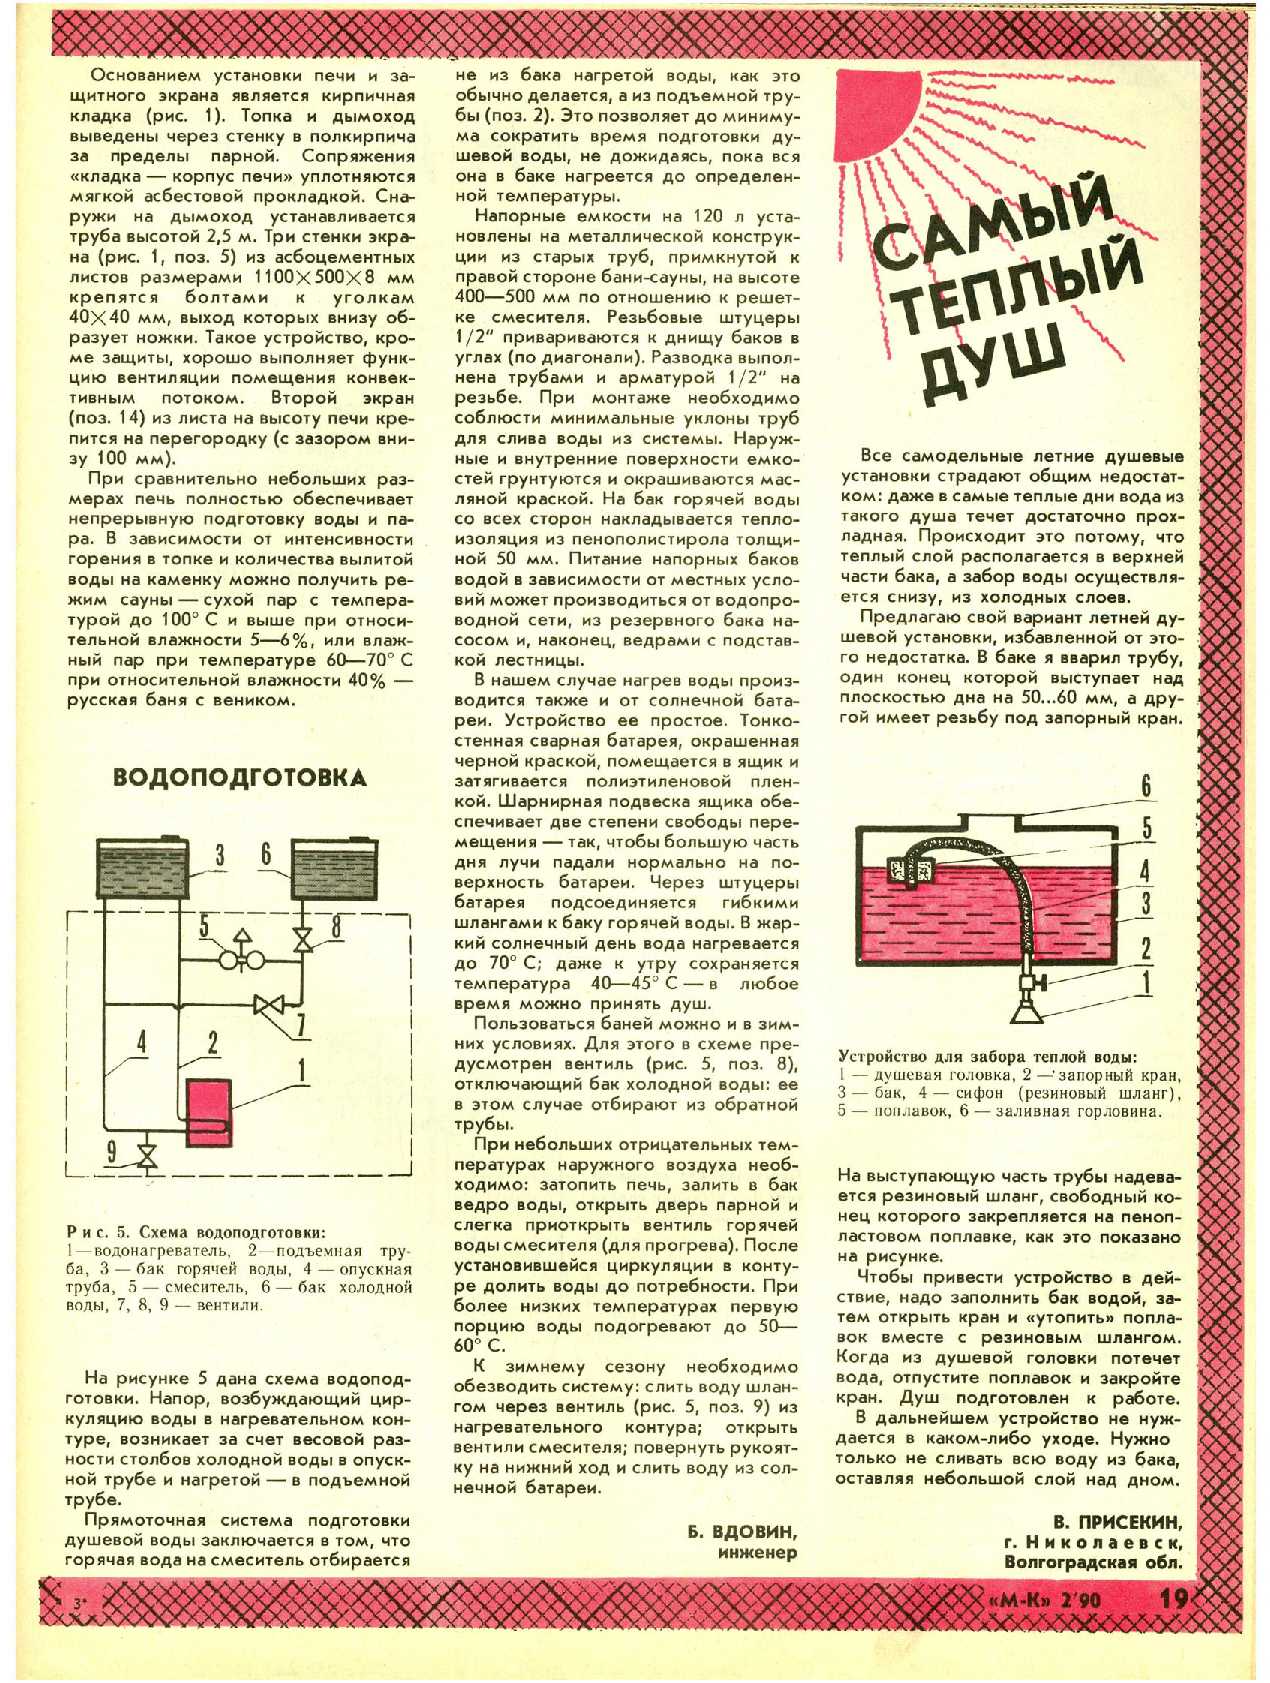 МК 2, 1990, 19 c.